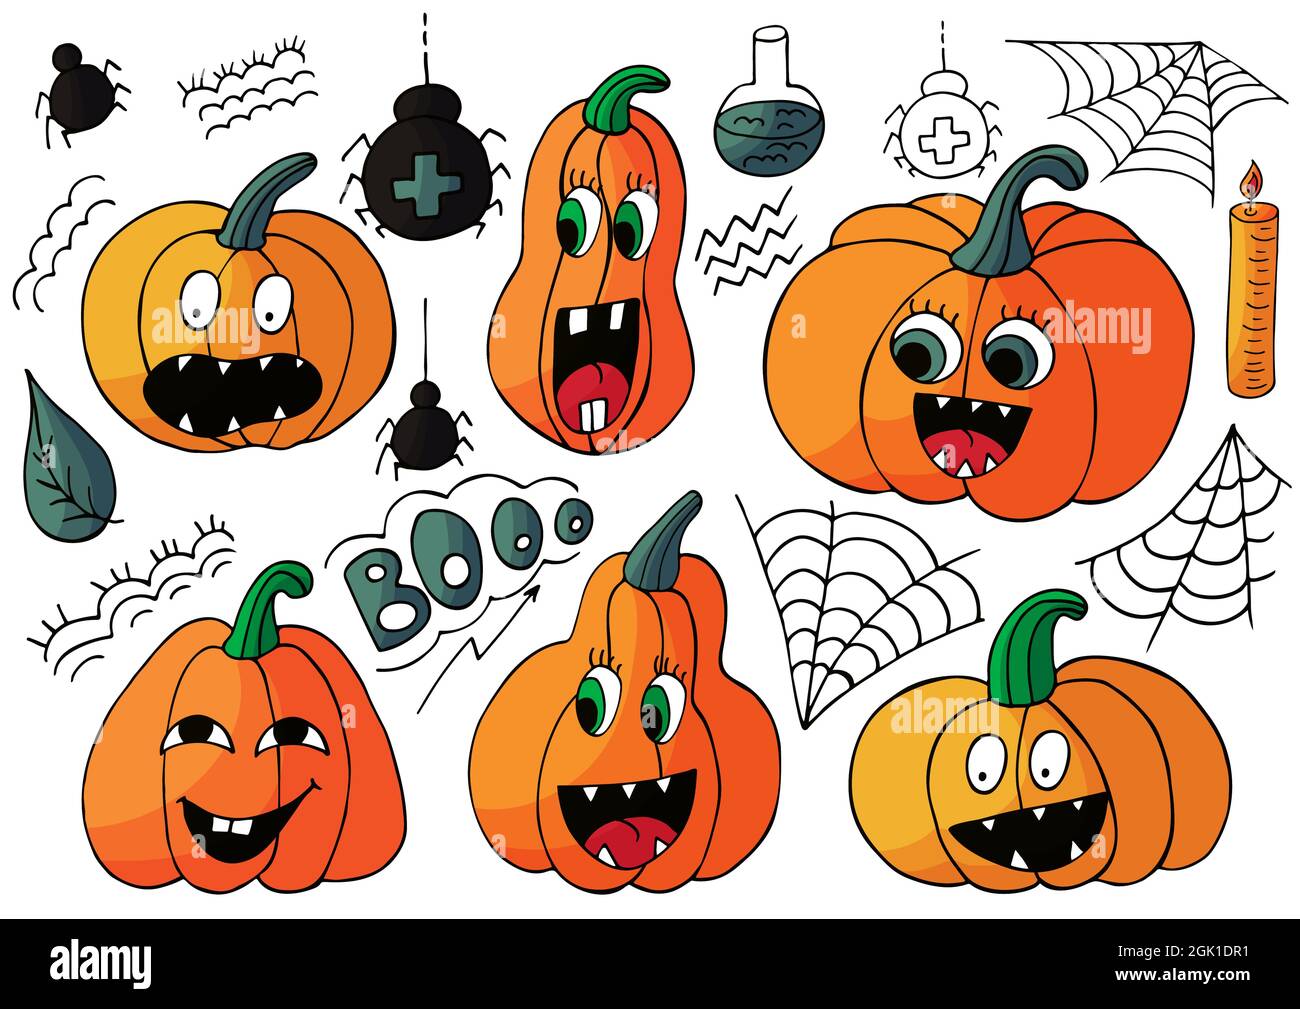 Top 110+ Imágenes de calabazas de halloween para dibujar 